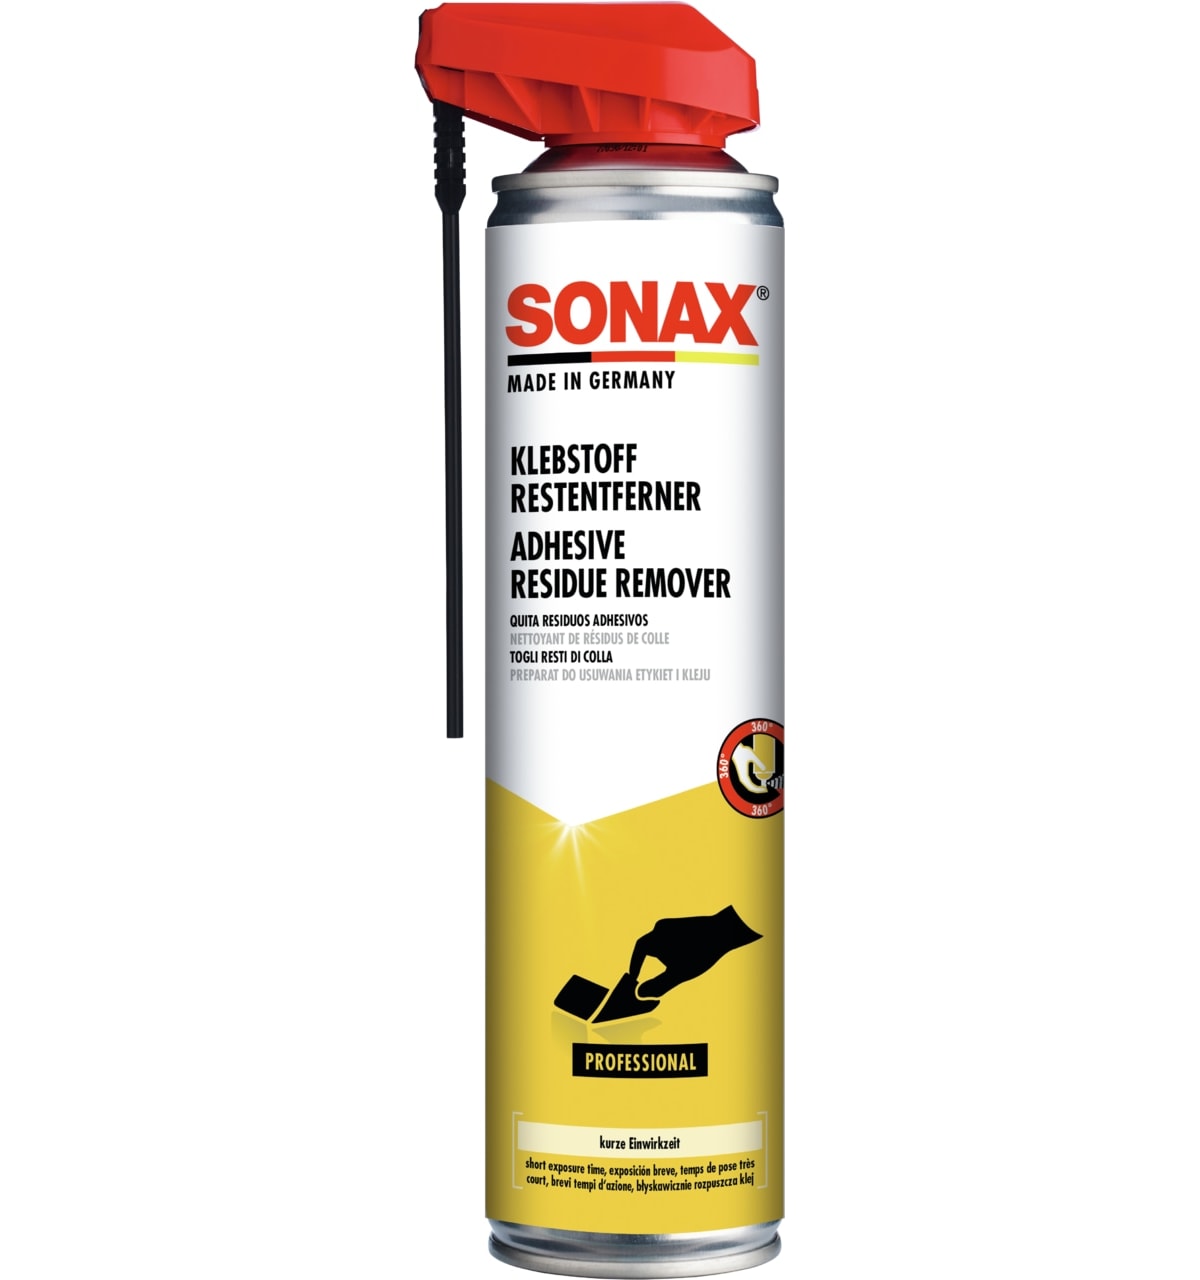 SONAX Klebstoffrestentferner mit EasySpray, 400 ml, 04773000